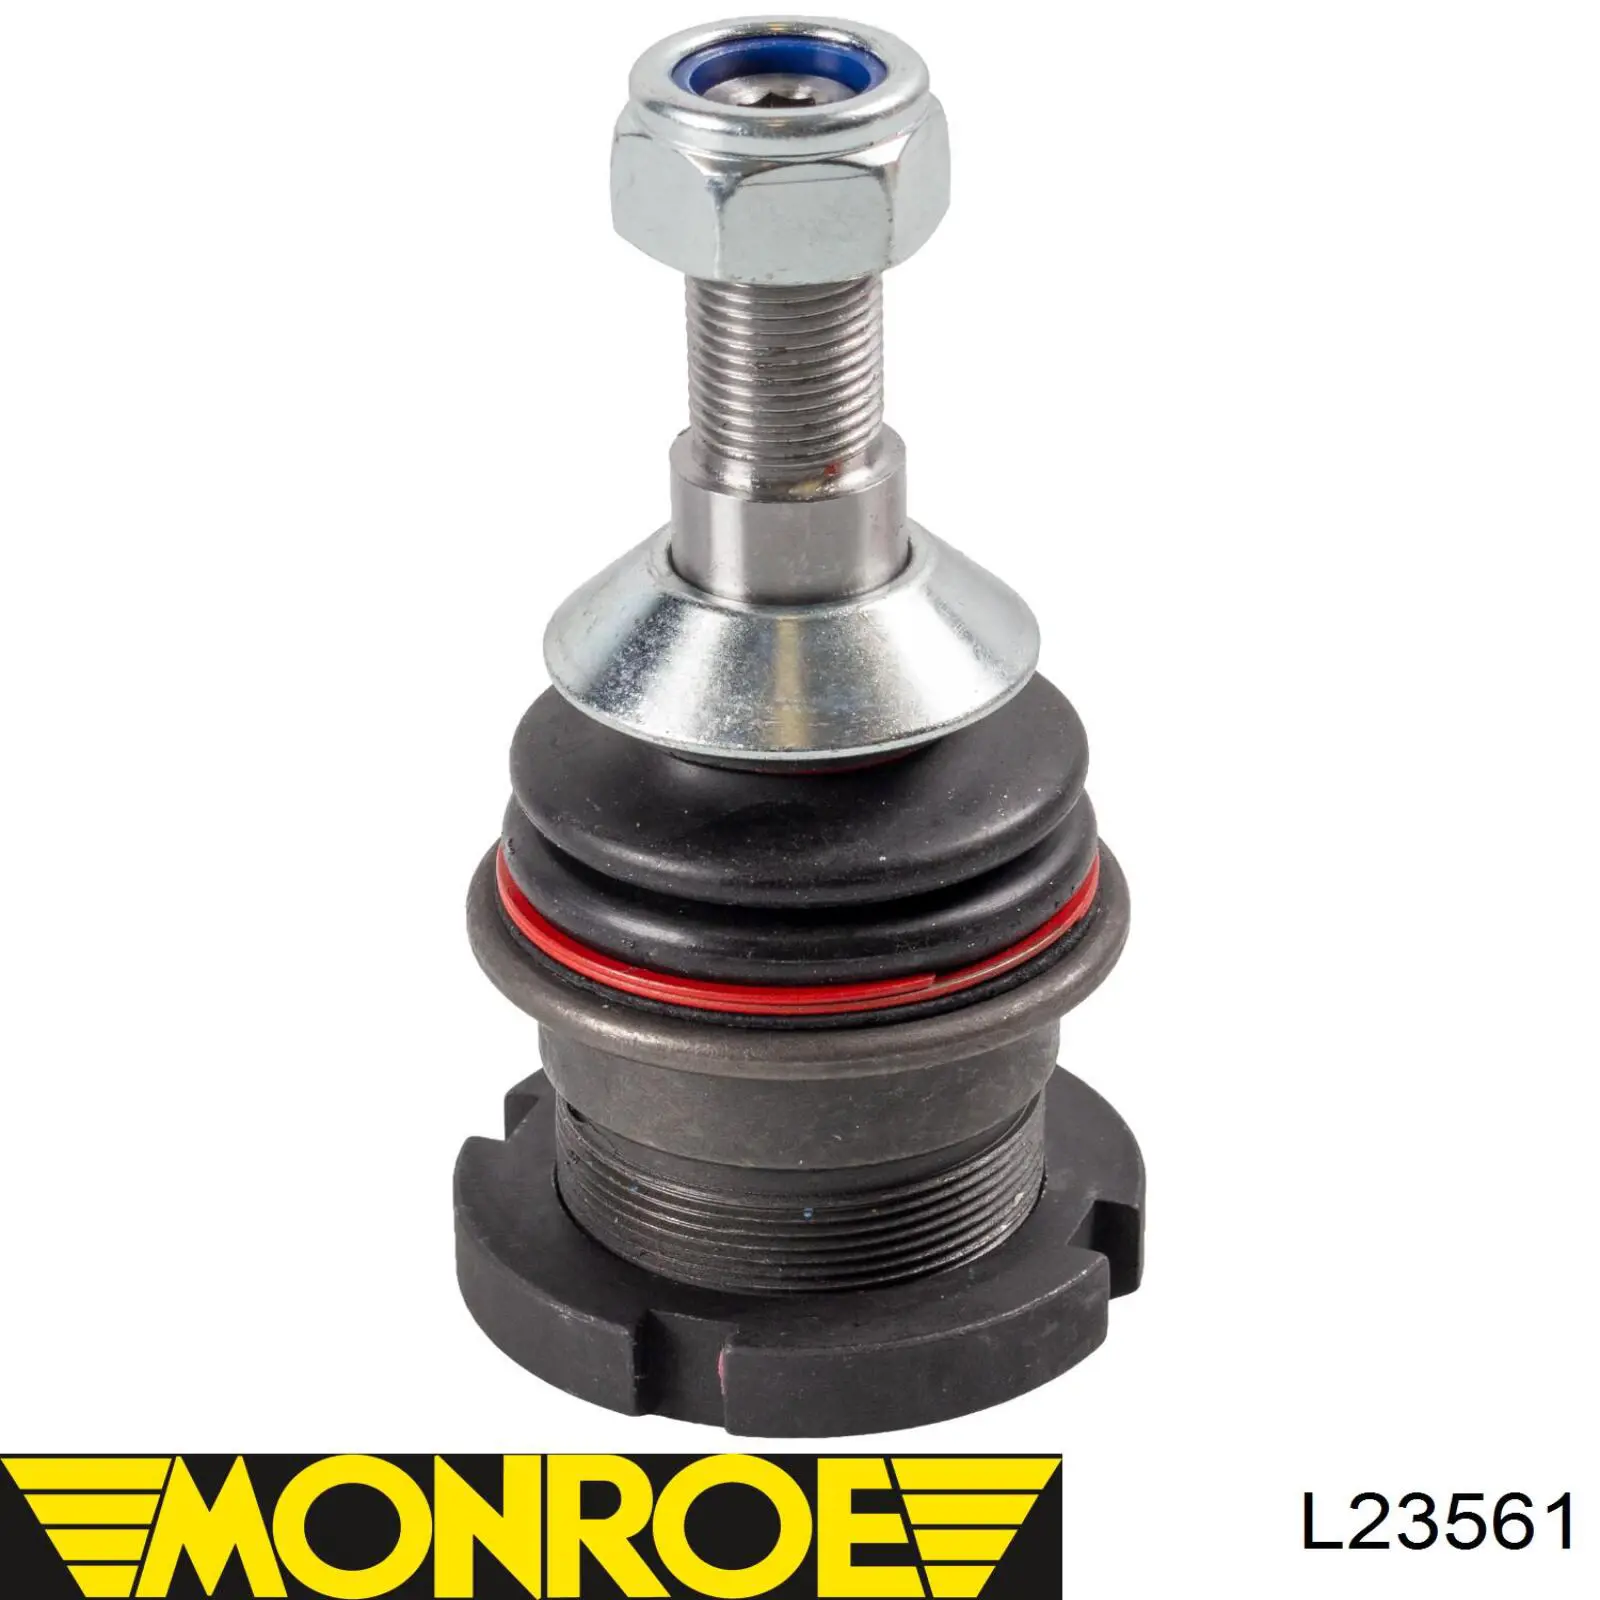 L23561 Monroe шаровая опора нижняя